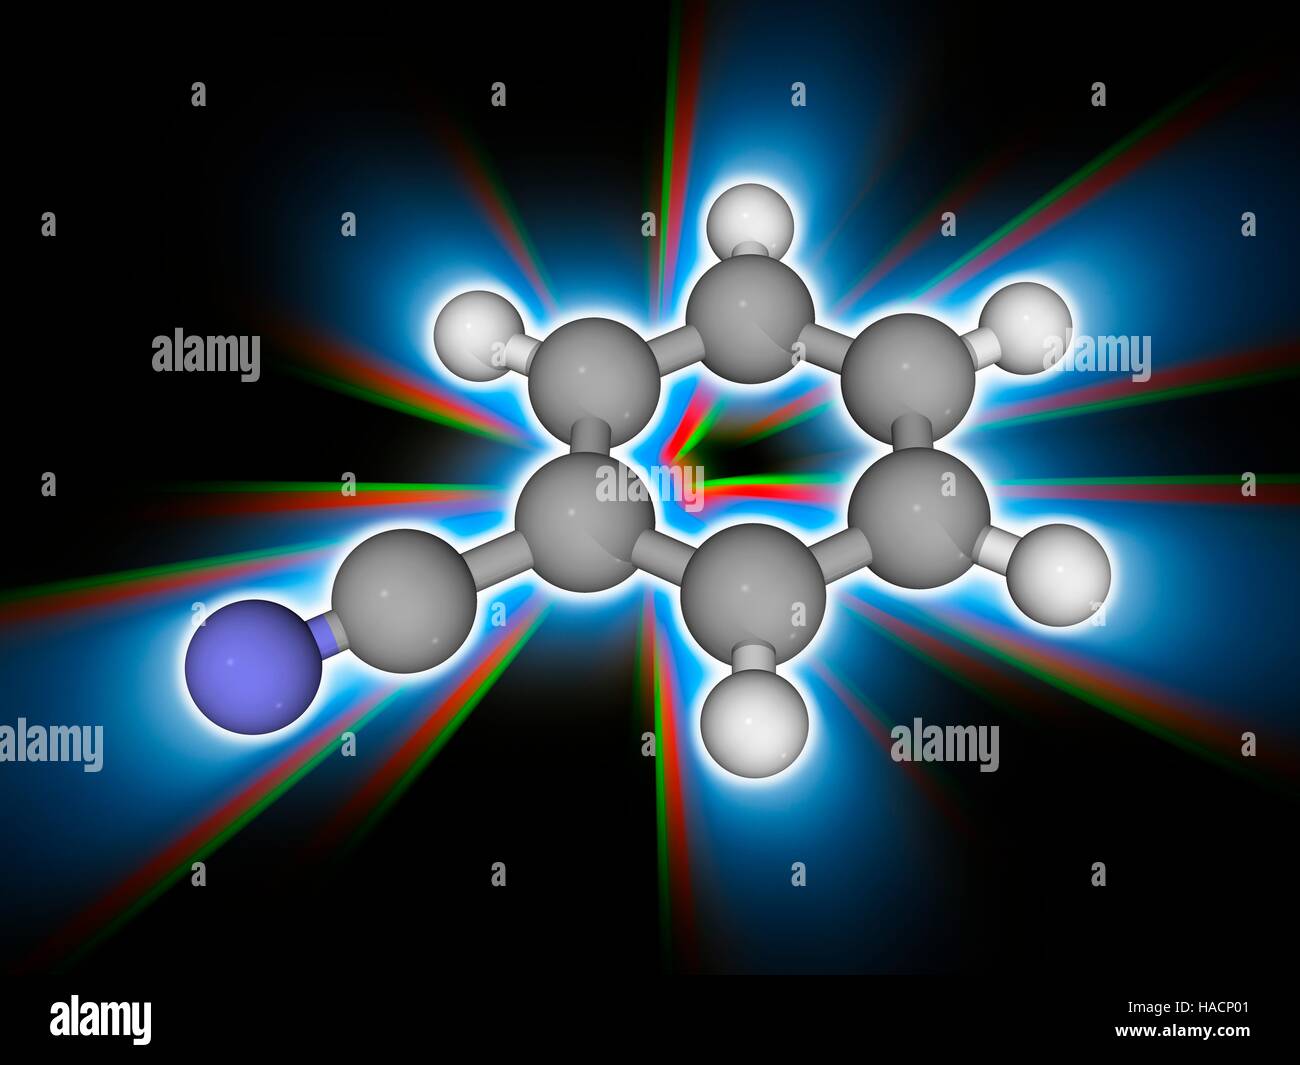 Benzonitril. Molekulares Modell des aromatische organische Verbindung Benzonitril (C7. H5. (N). es ist eine wichtige Vorstufe für die Synthese von anderen organischen Substanzen. Es hat einen süßen Mandel Geruch. Atome als Kugeln dargestellt werden und sind farblich gekennzeichnet: Kohlenstoff (grau), Wasserstoff (weiß) und Stickstoff (blau). Abbildung. Stockfoto